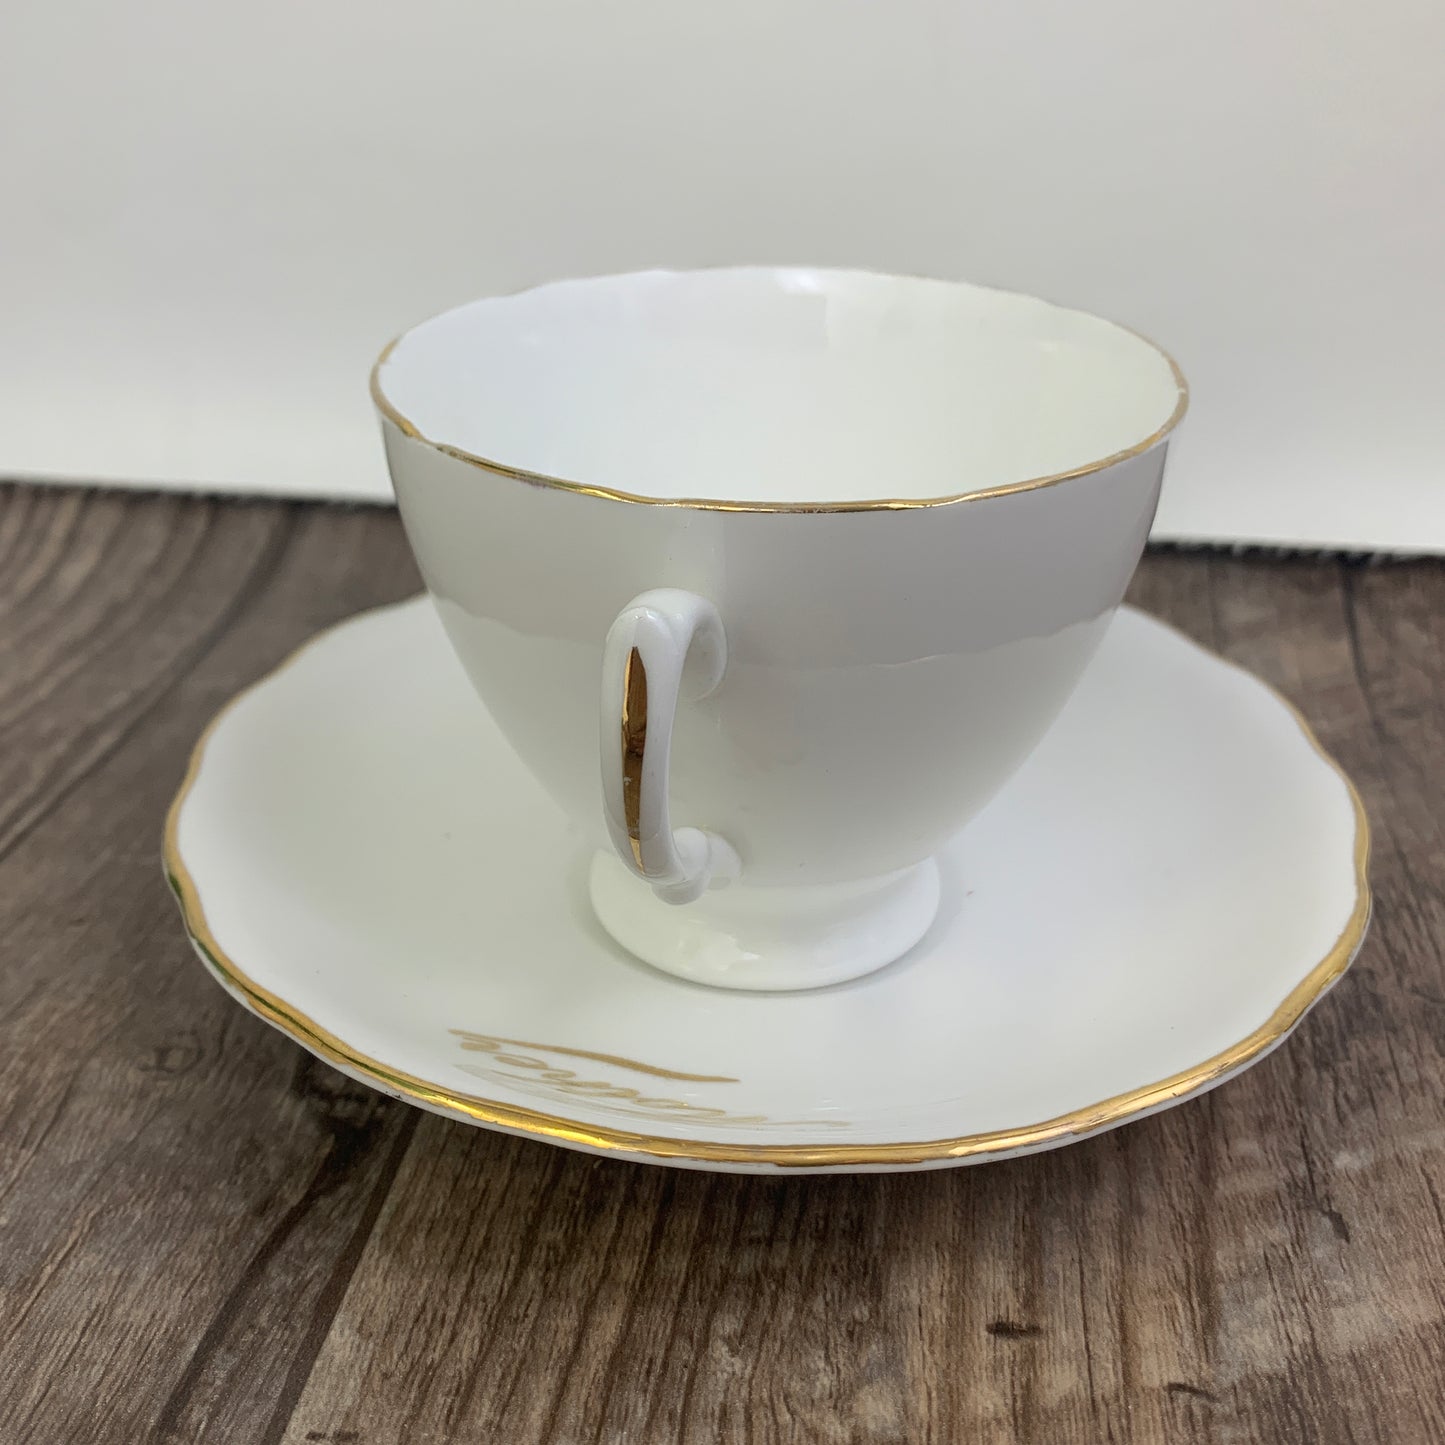 Vintage White Teacup and Saucer Mother Gold Script Vintage Colclough Tea Cup